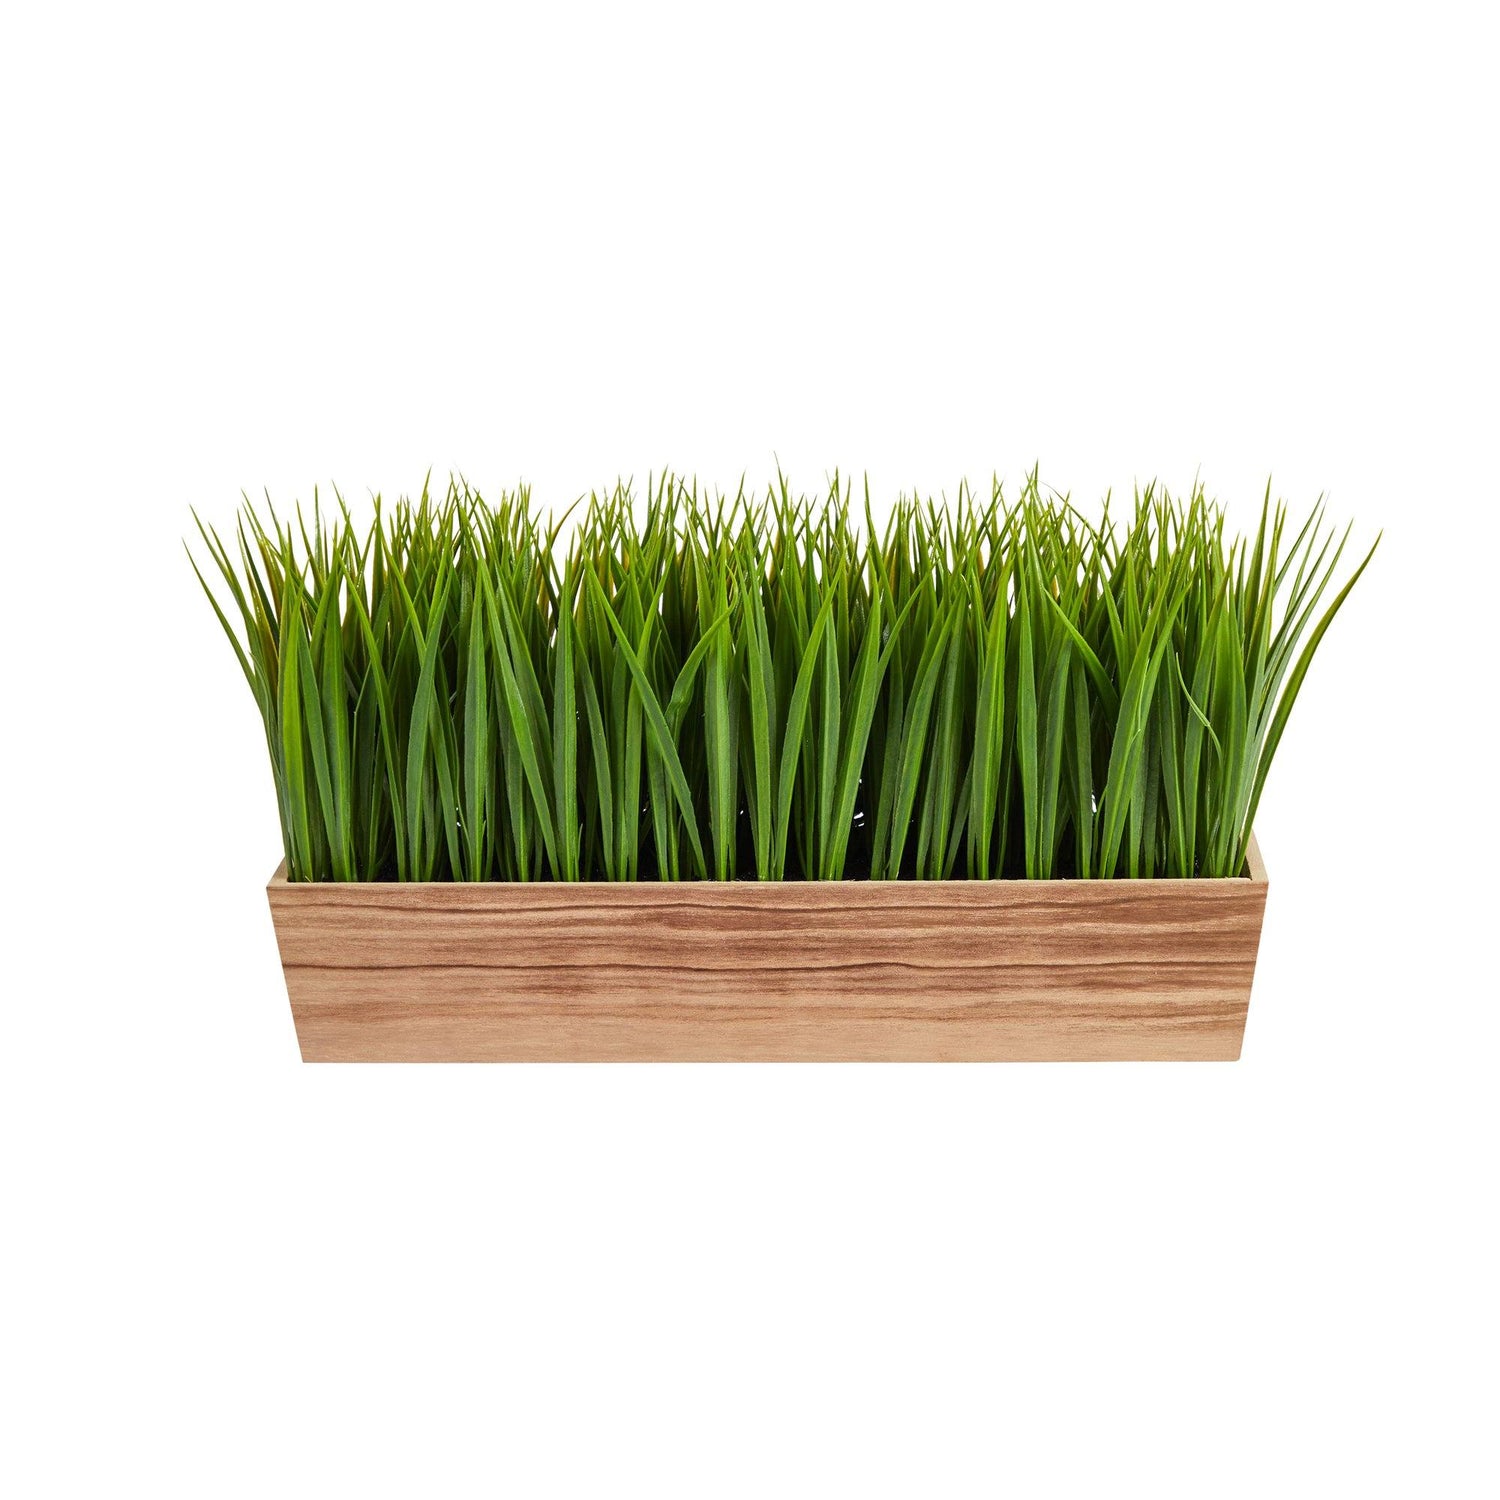 20” Vanilla Grass Artificial Plant in Decorative Planter